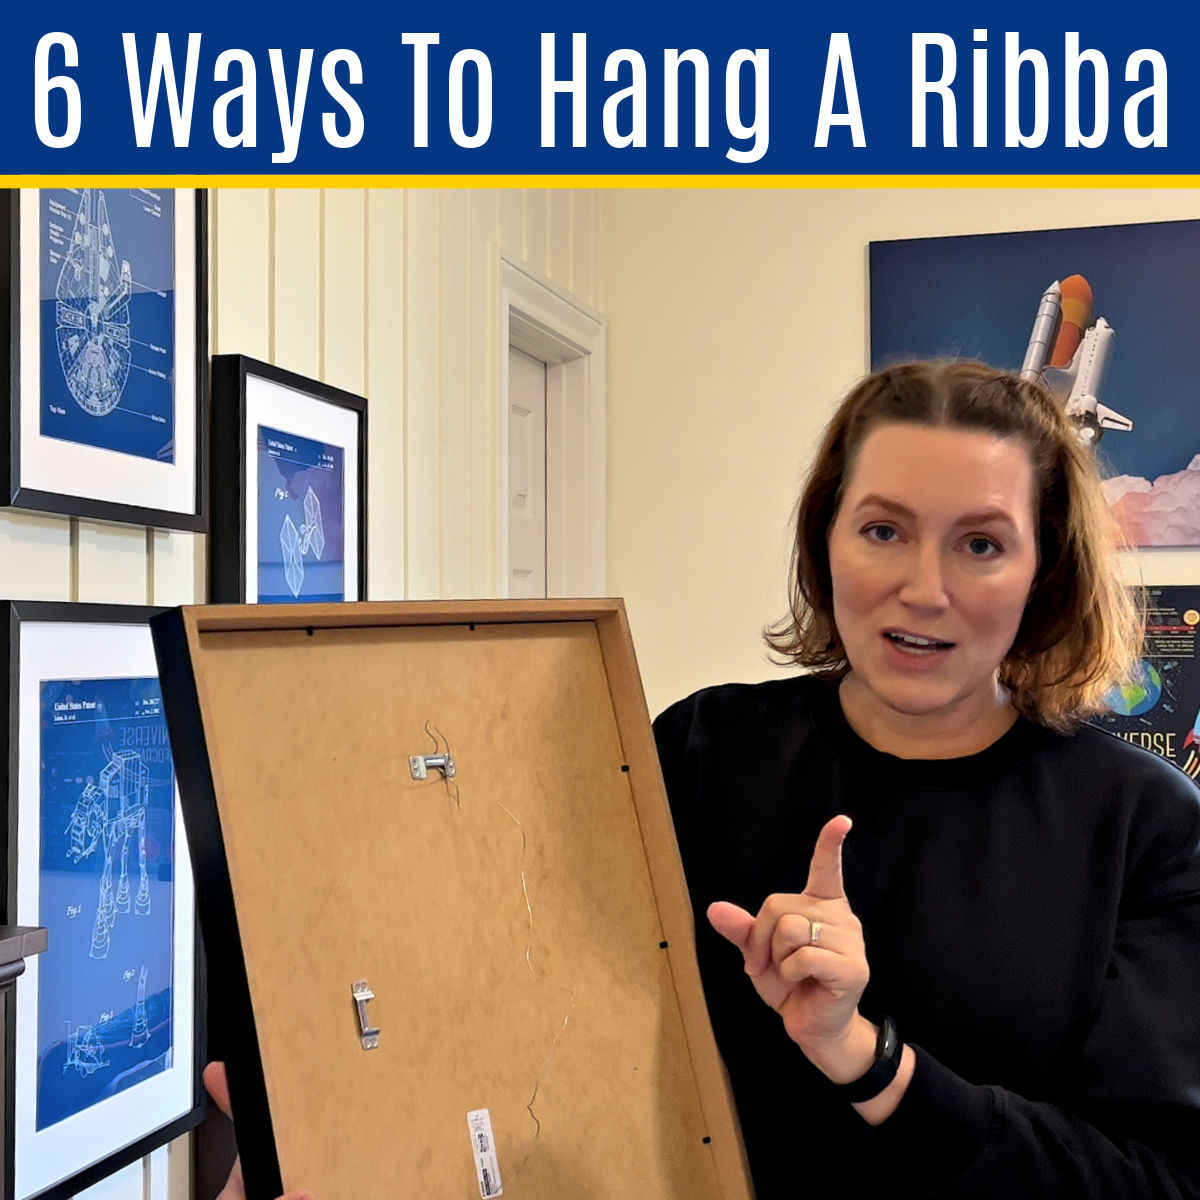 RIBBA Frame, black, 4x6 - IKEA